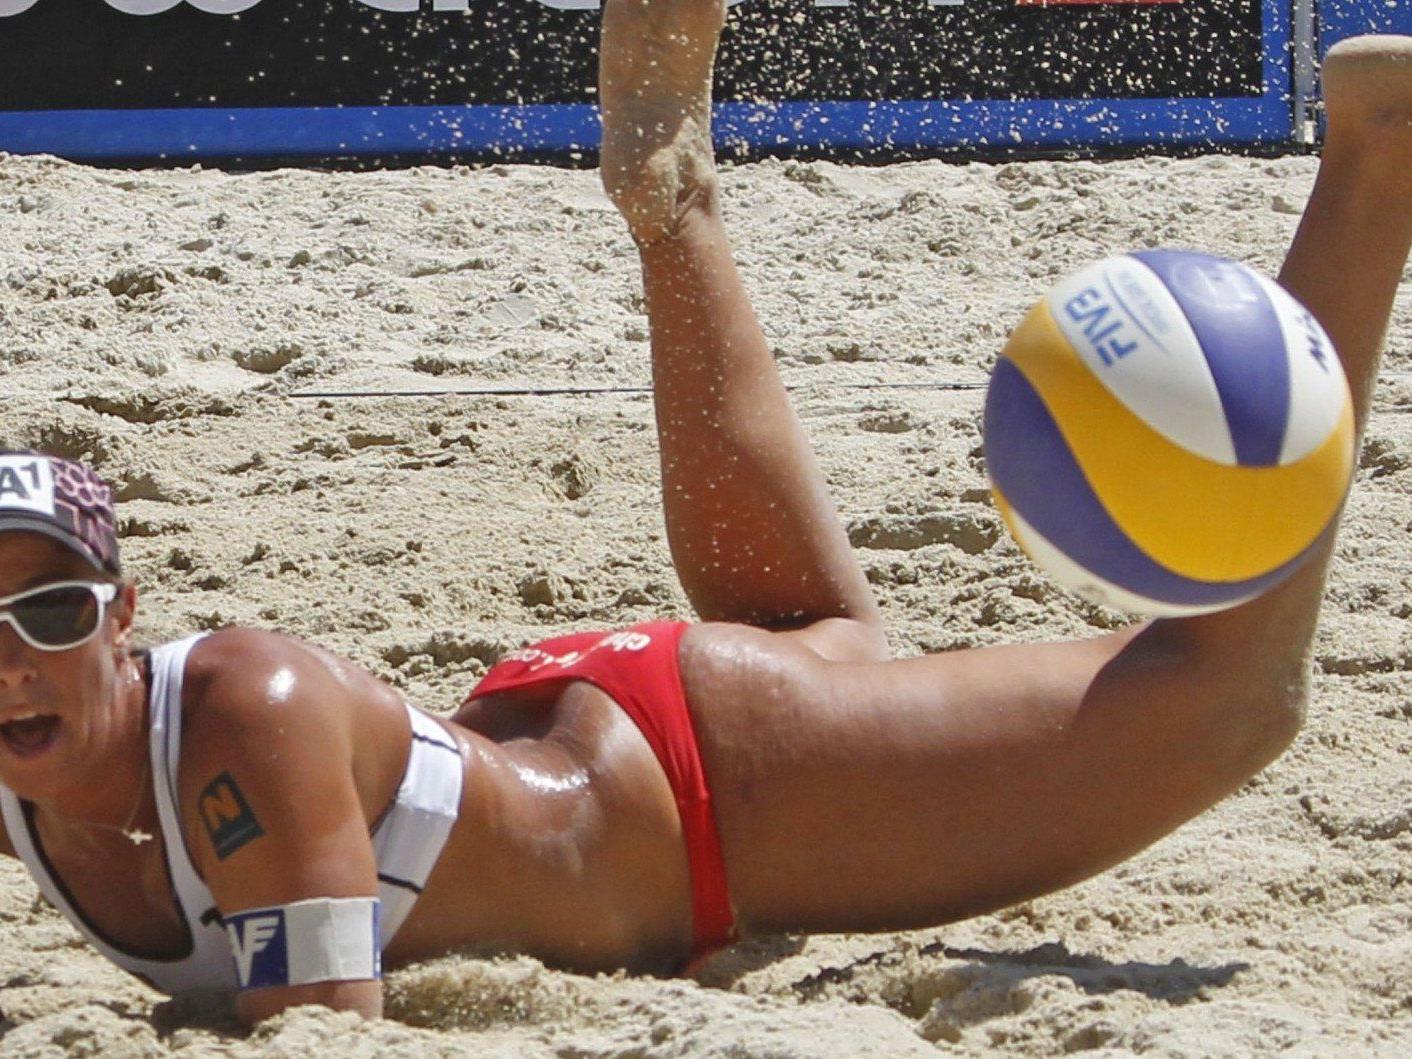 Vom 29. Juli bis 4. August 2013 geht in Klagenfurt die Beach Volleyball-EM über die Bühne.